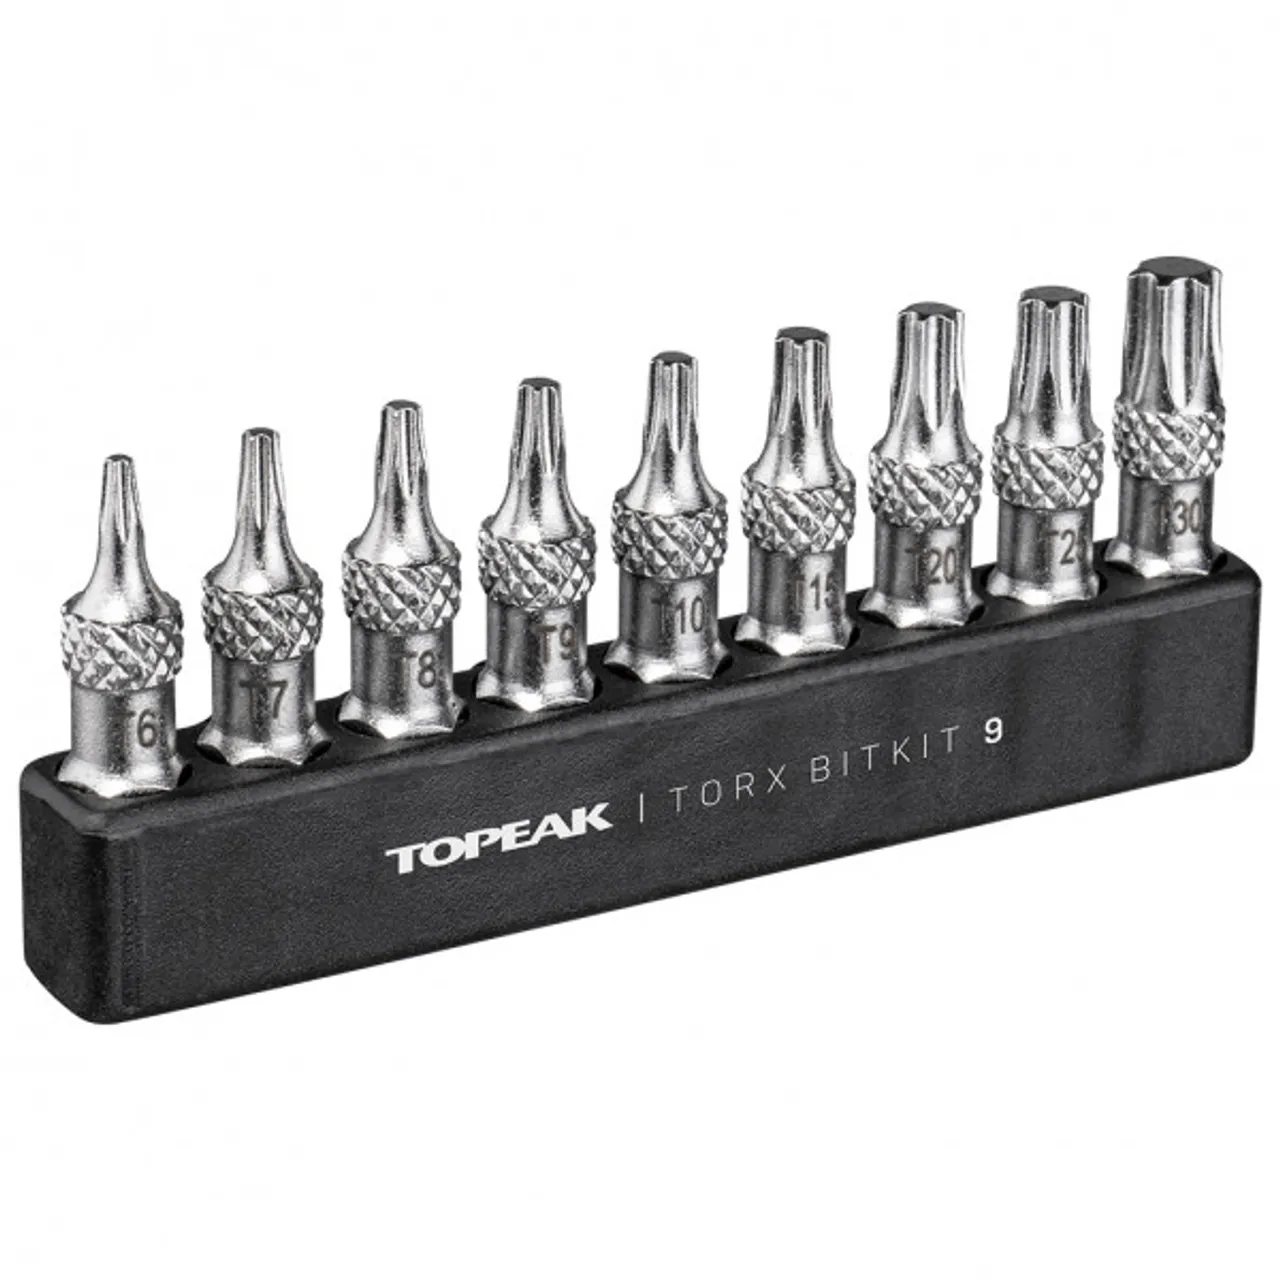 Topeak - Torx BitKit 9 - Tool kit black